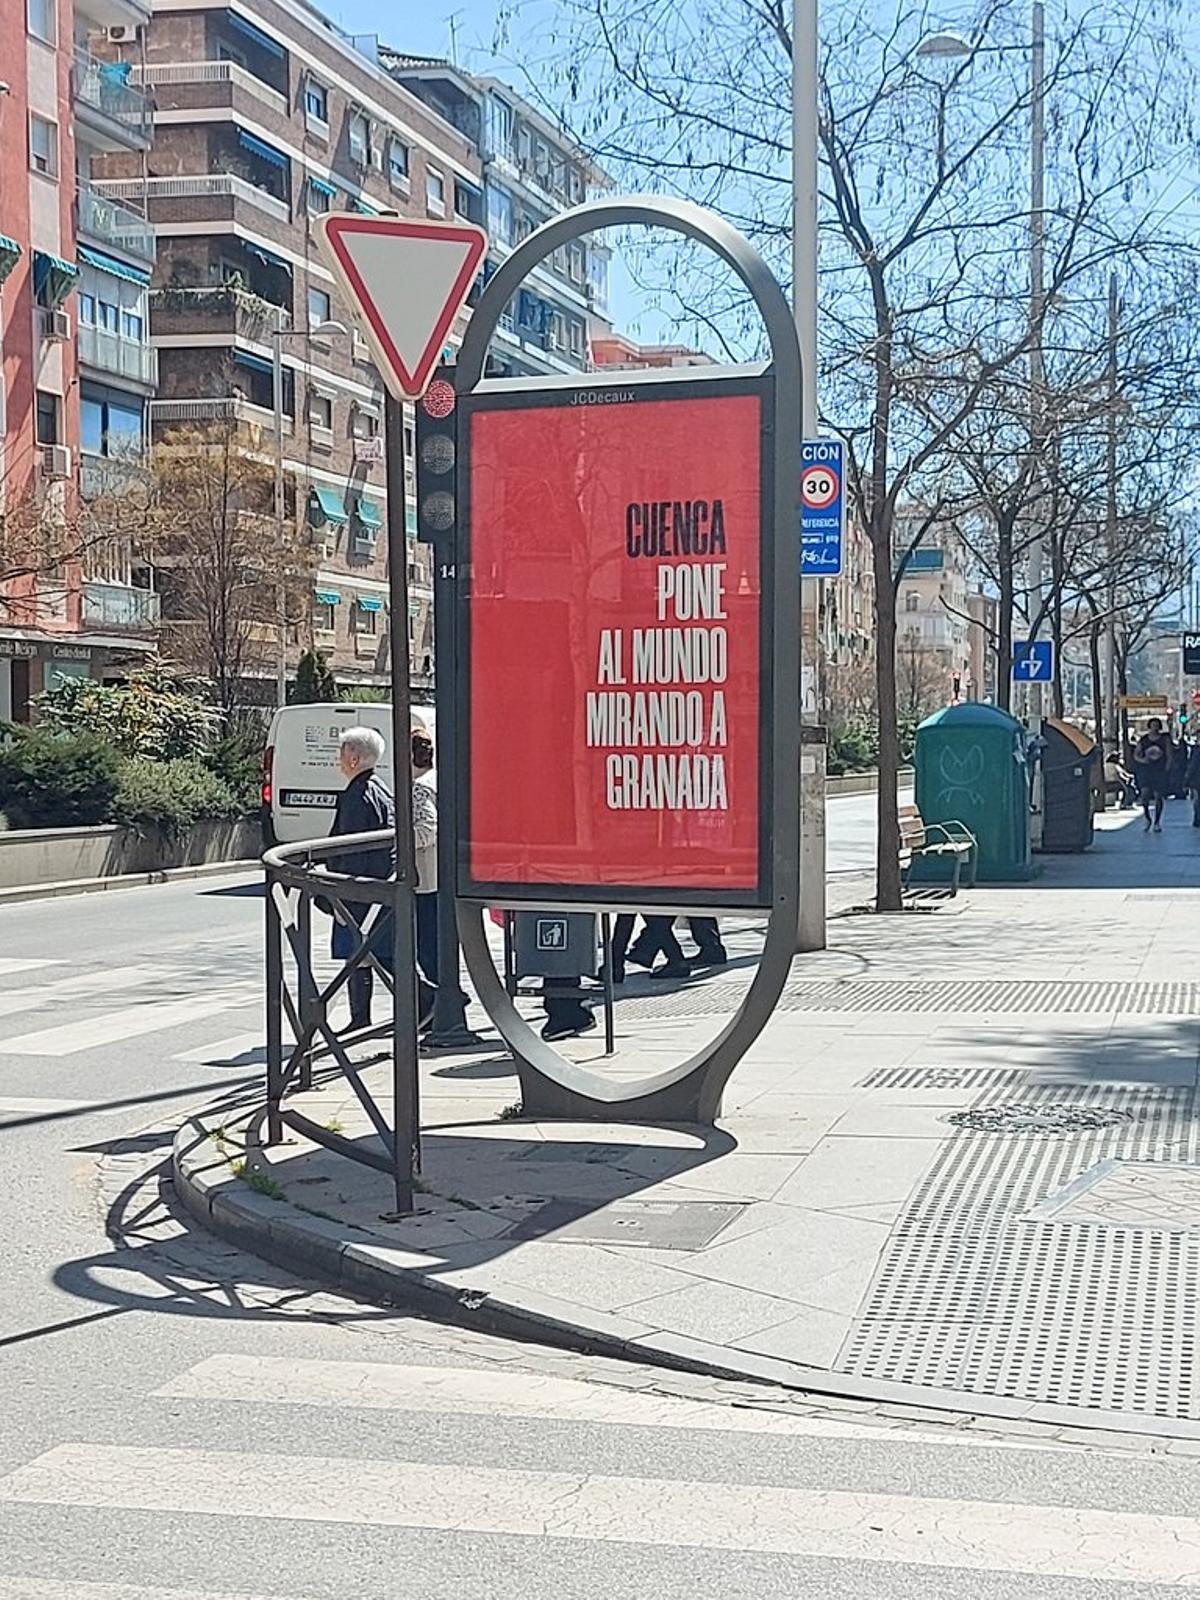 Paco Cuenca, alcalde socialista de Granada, se desmarcó en marzo con esta campaña inspirada en el dicho con connotación sexual poner a alguien mirando a Cuenca